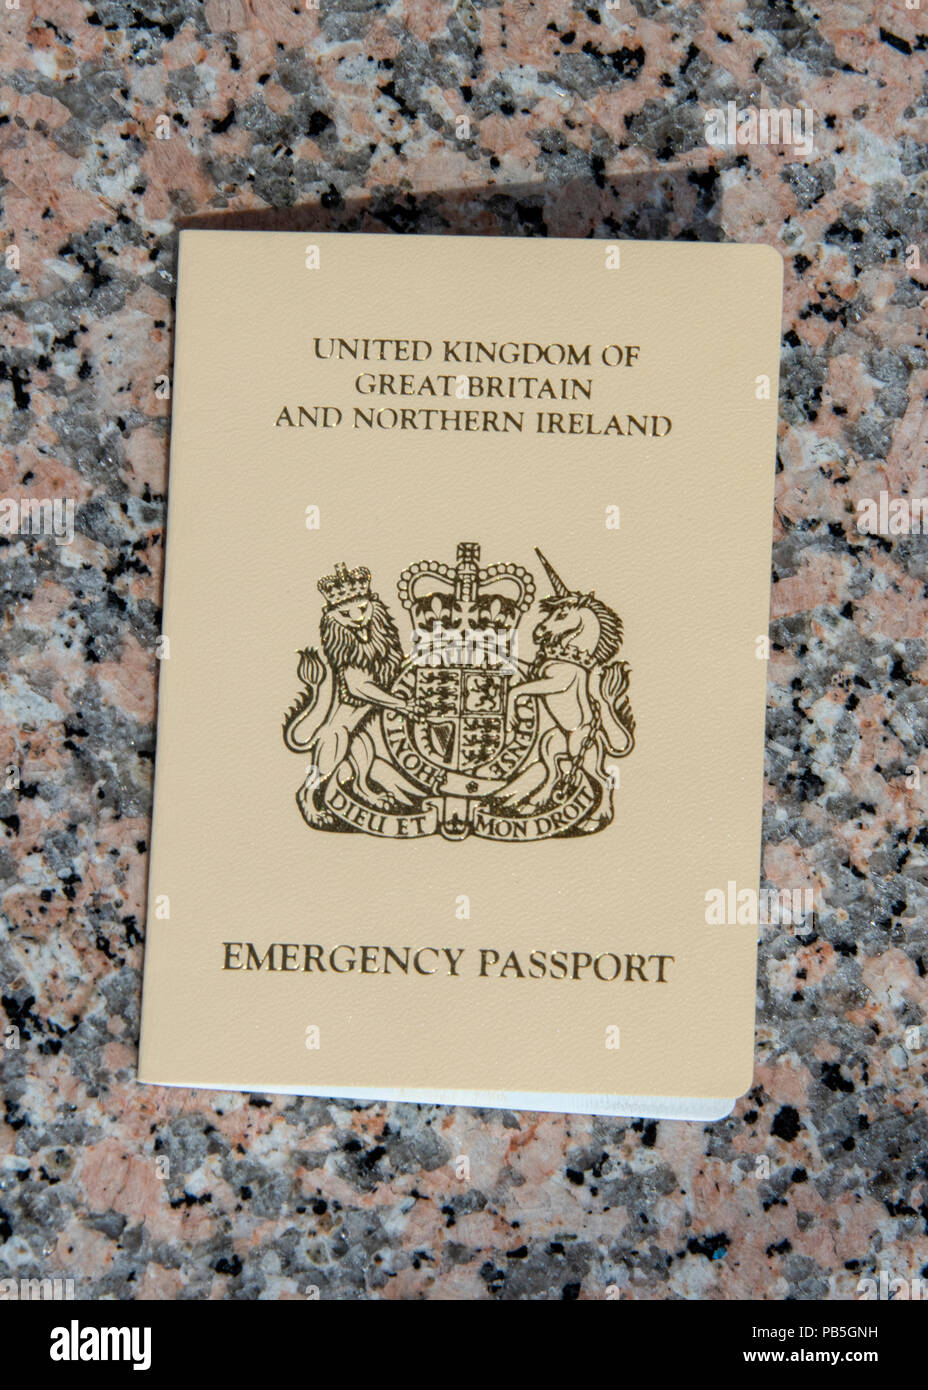 ES, Barcelone - Juin 2018 - Urgence passeport délivré à un citoyen  britannique par le consulat britannique à Barcelone Photo Stock - Alamy